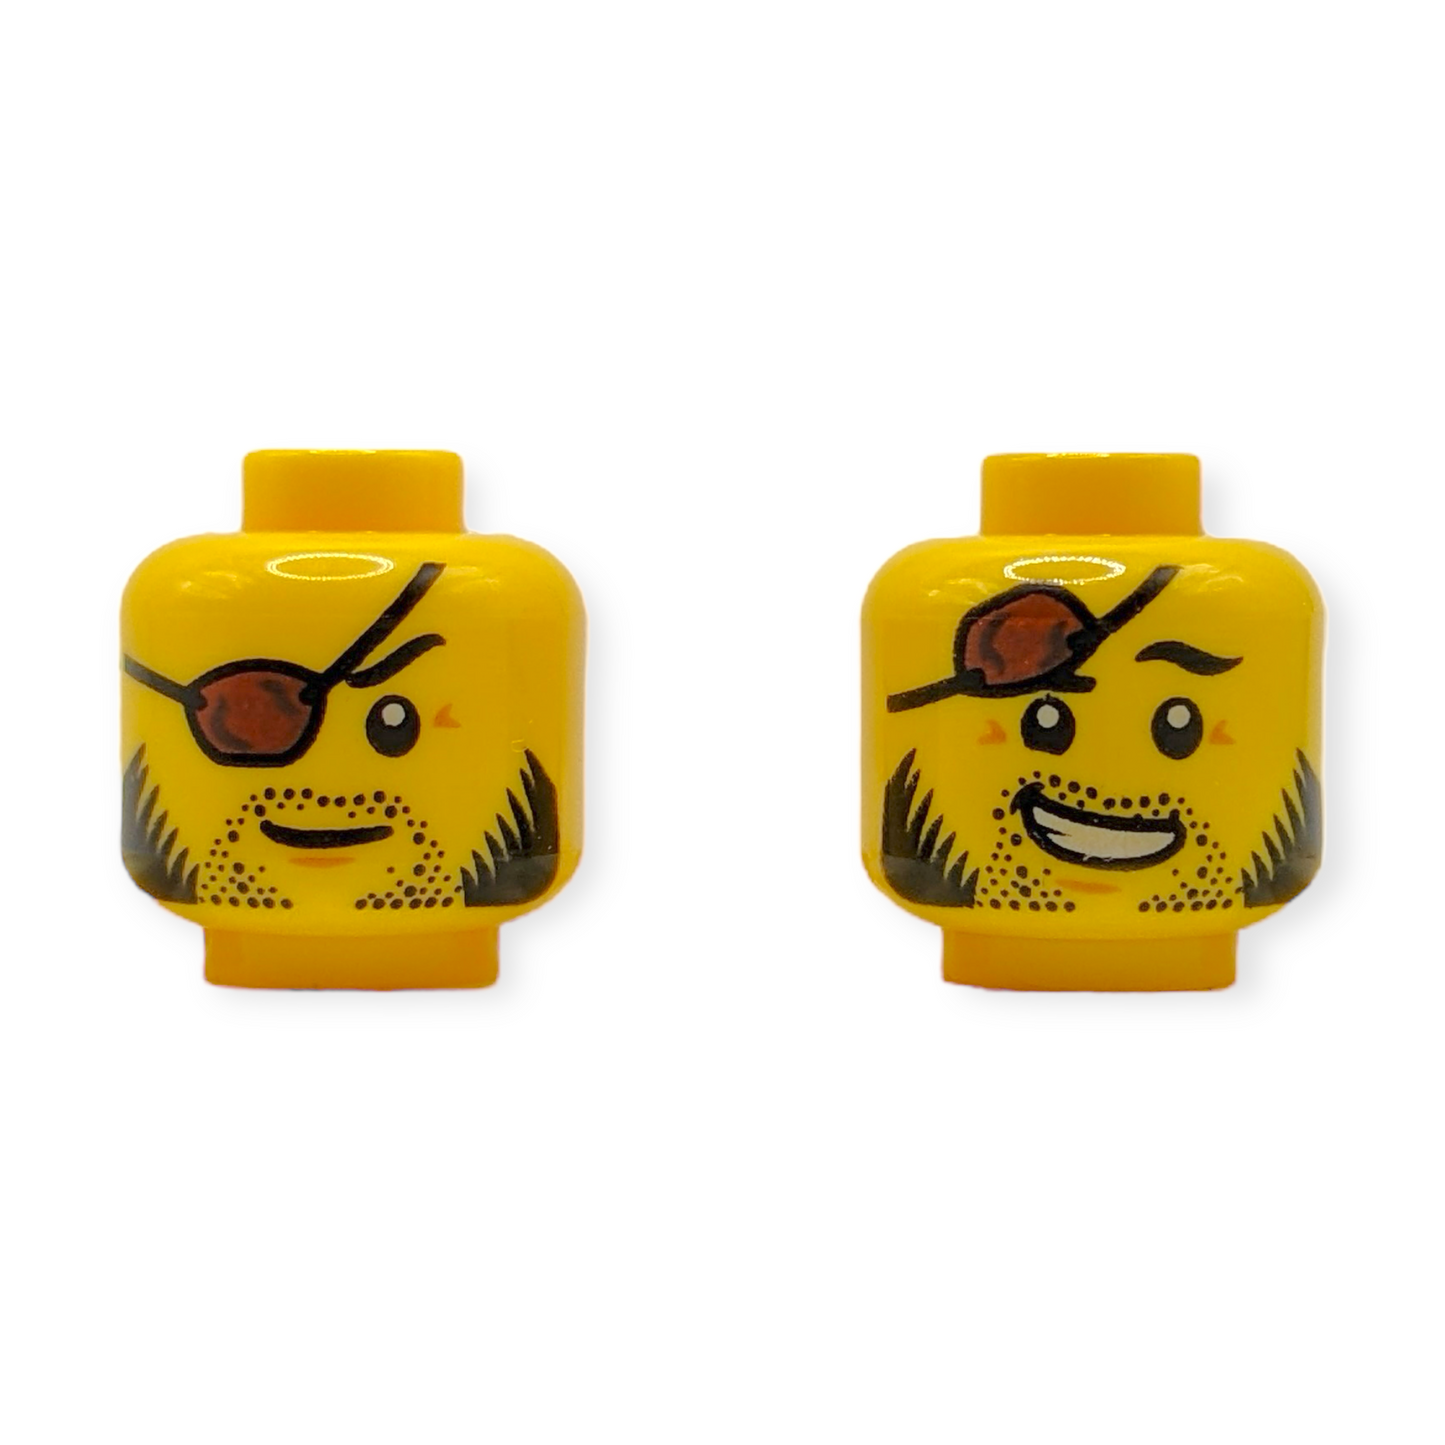 LEGO Head - 2949 Dual Sided Reddish Brown Eye Patch